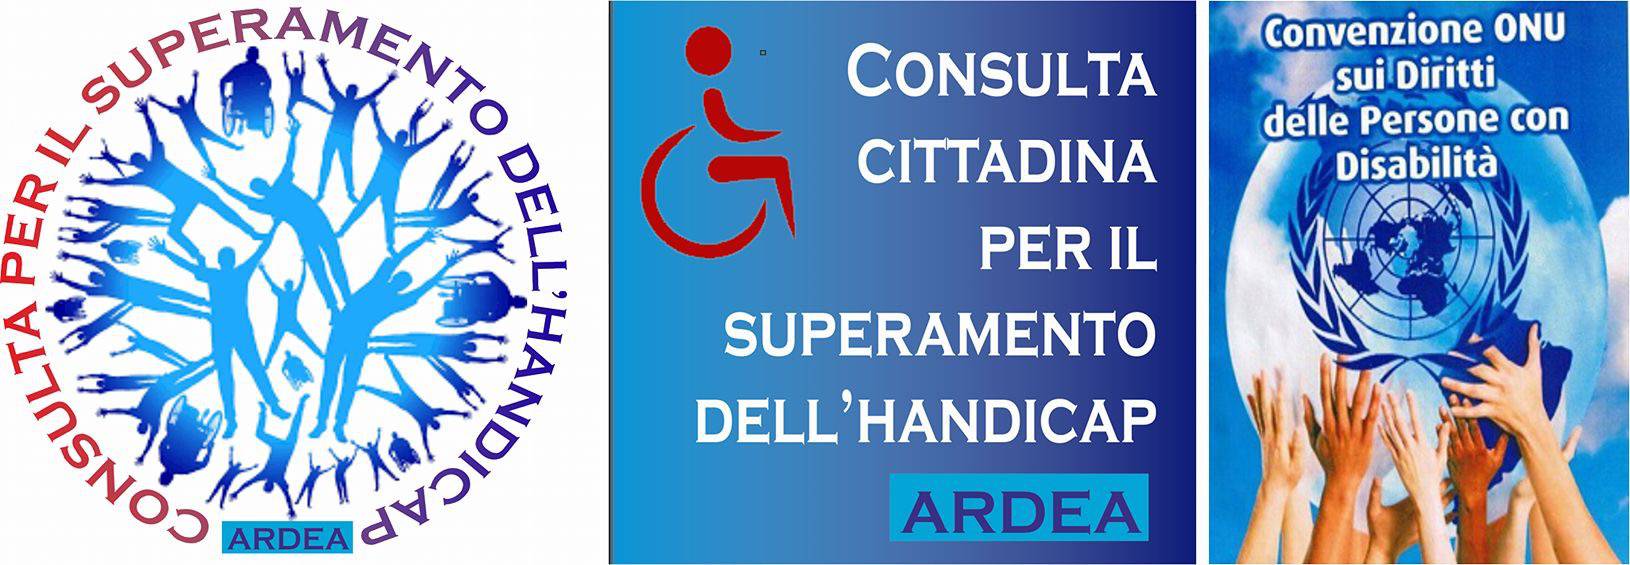 Logo consulta cittadina superamento disabilità Ardea 